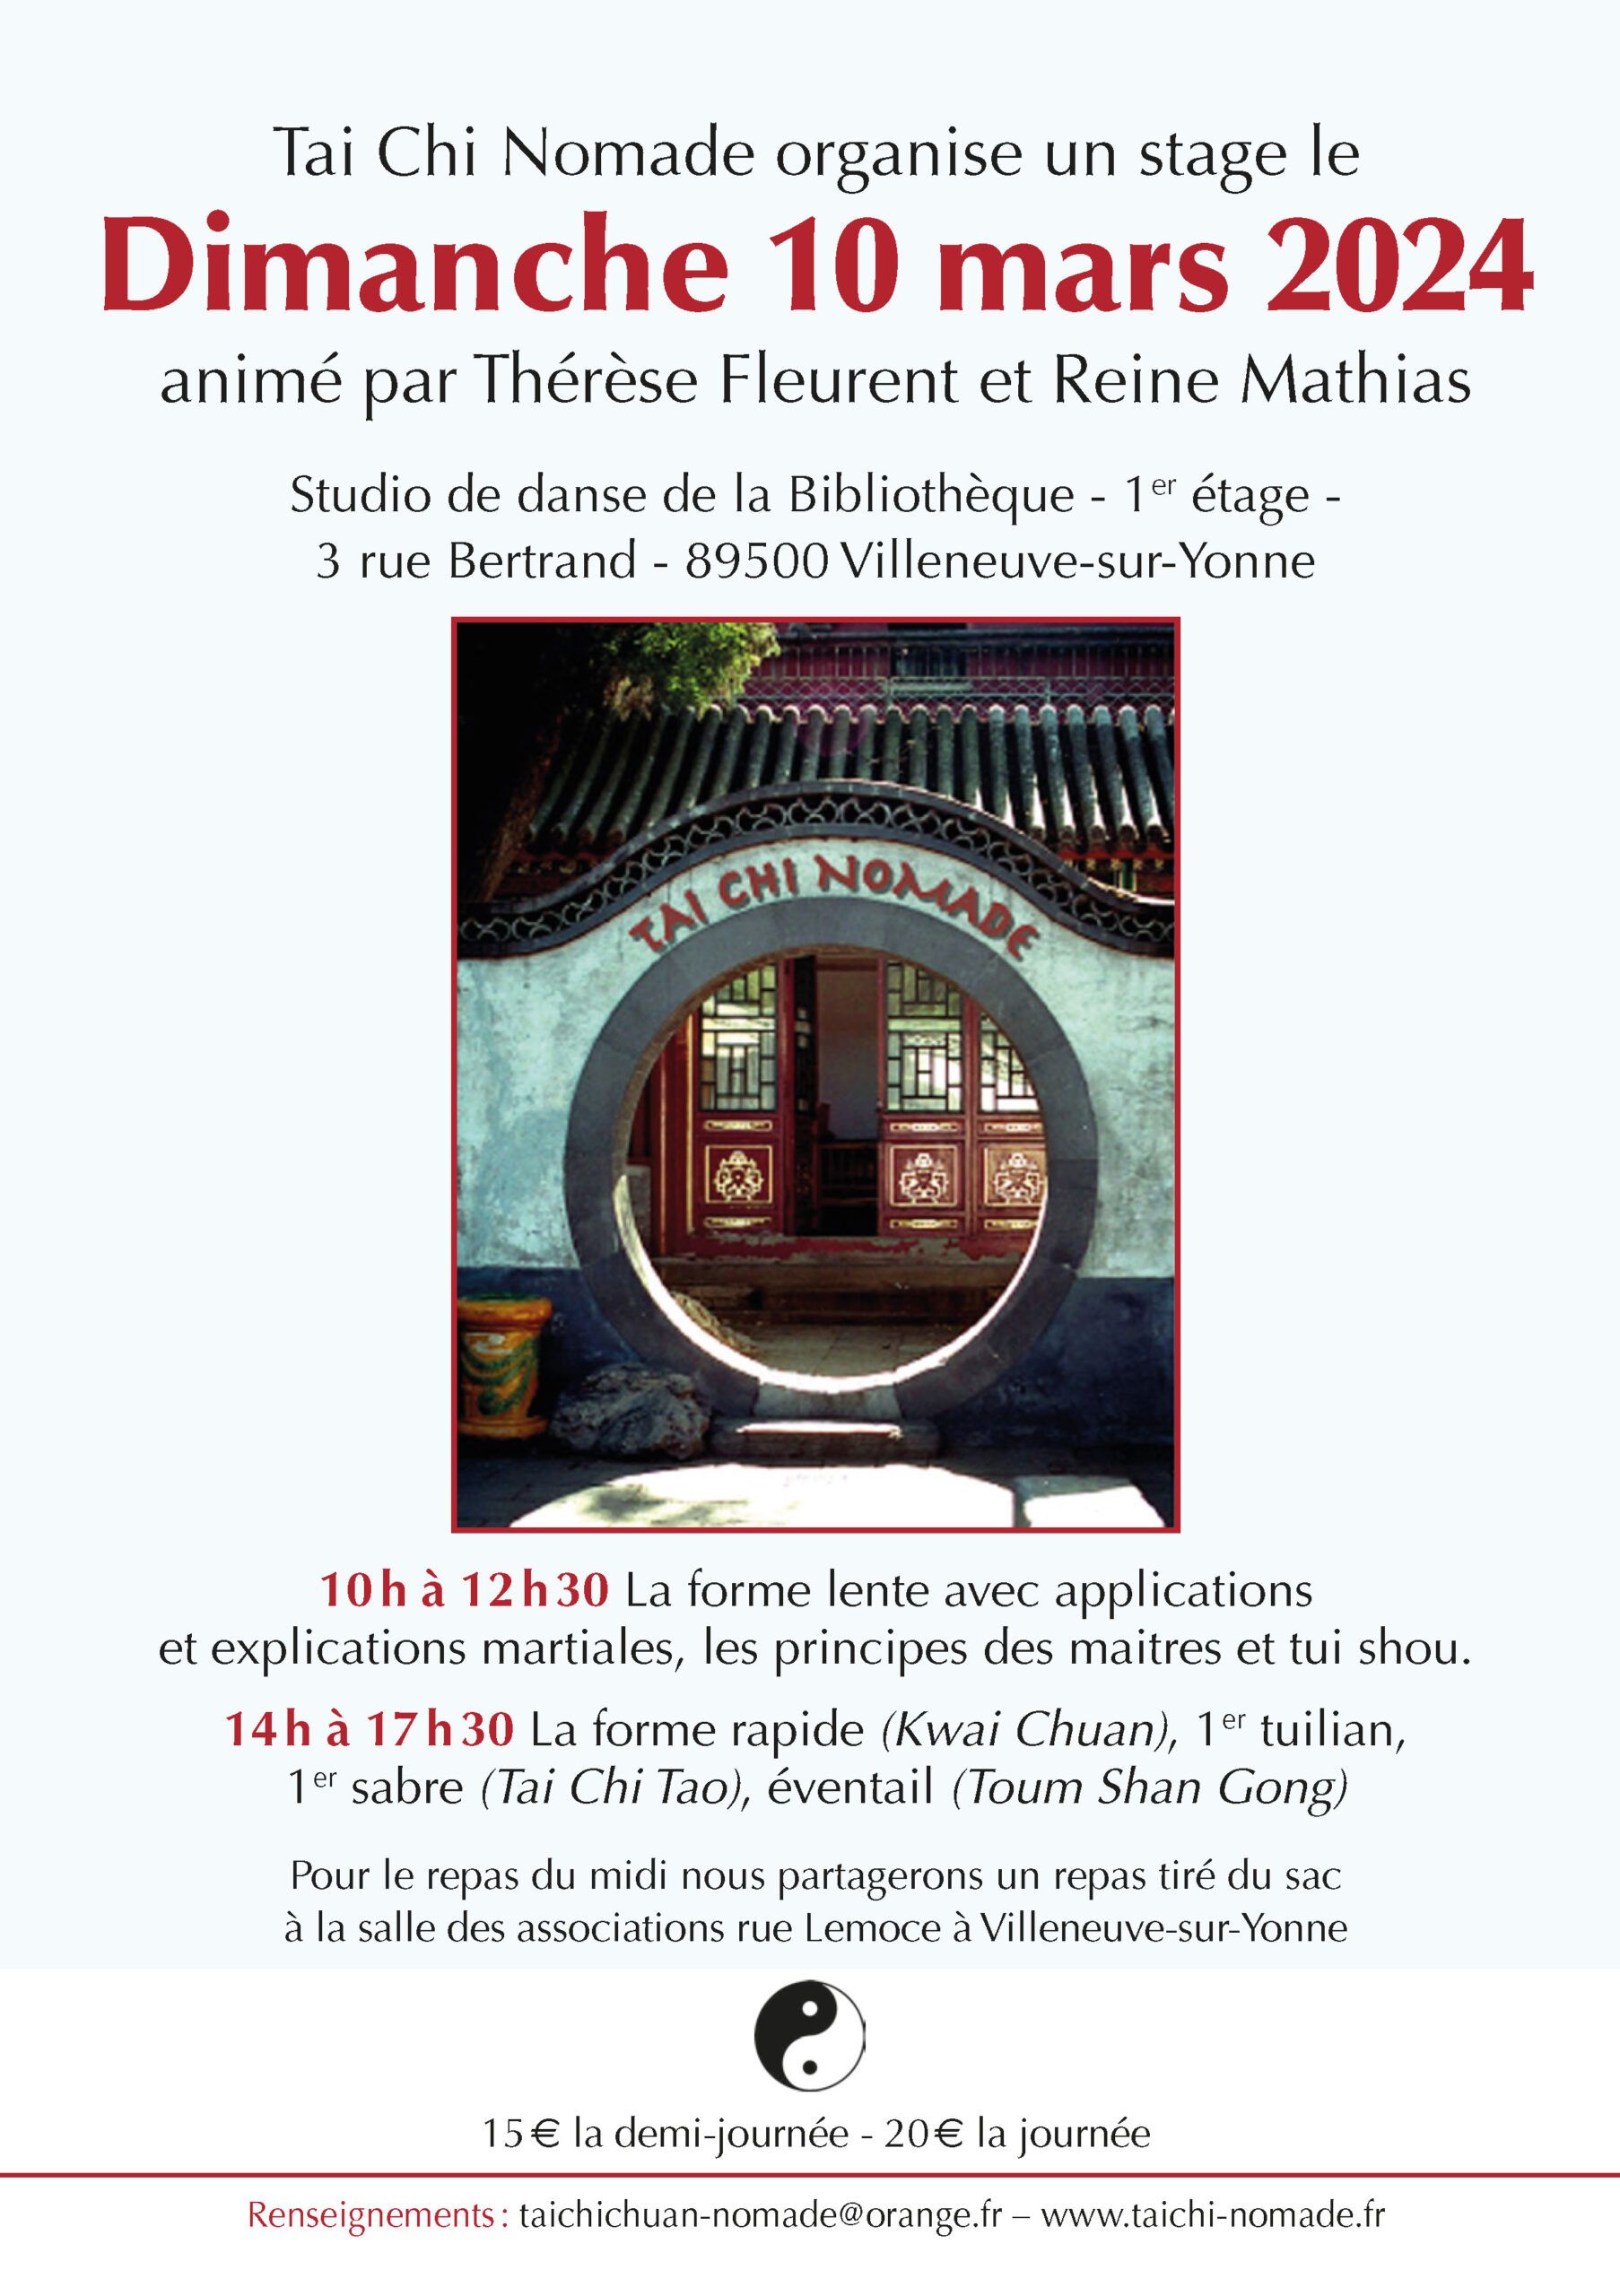 

Tai Chi Nomade organise un stage animé par Thérèse Fleurent et Reine Mathias le dimanche 10 mar...